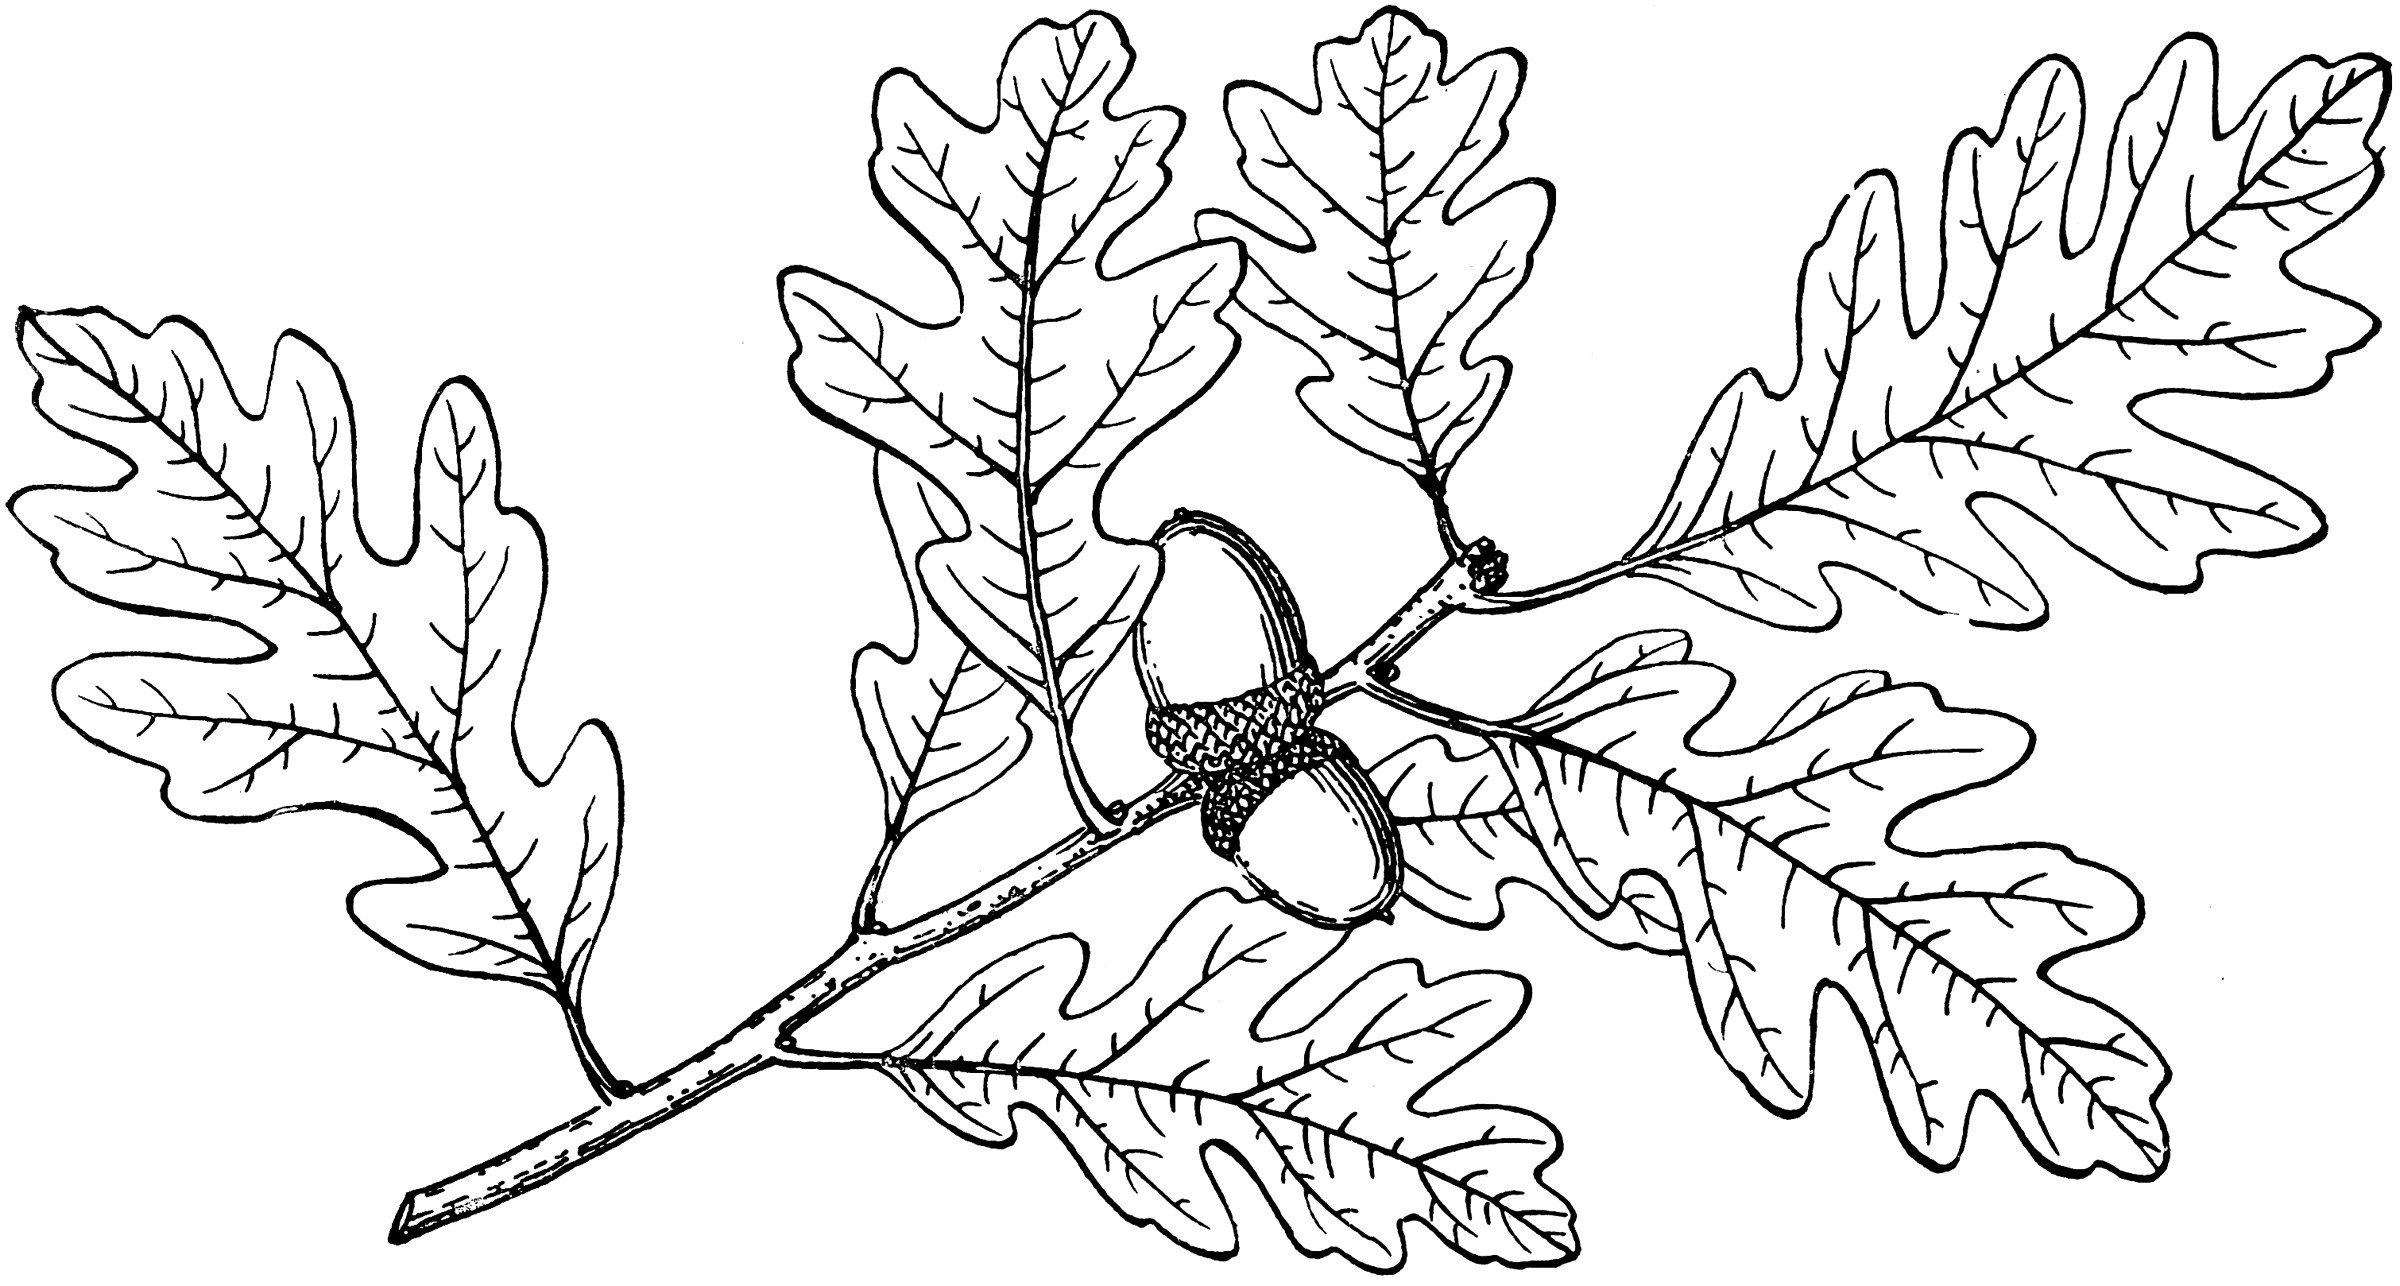 Раскраска листья дуба с желудями